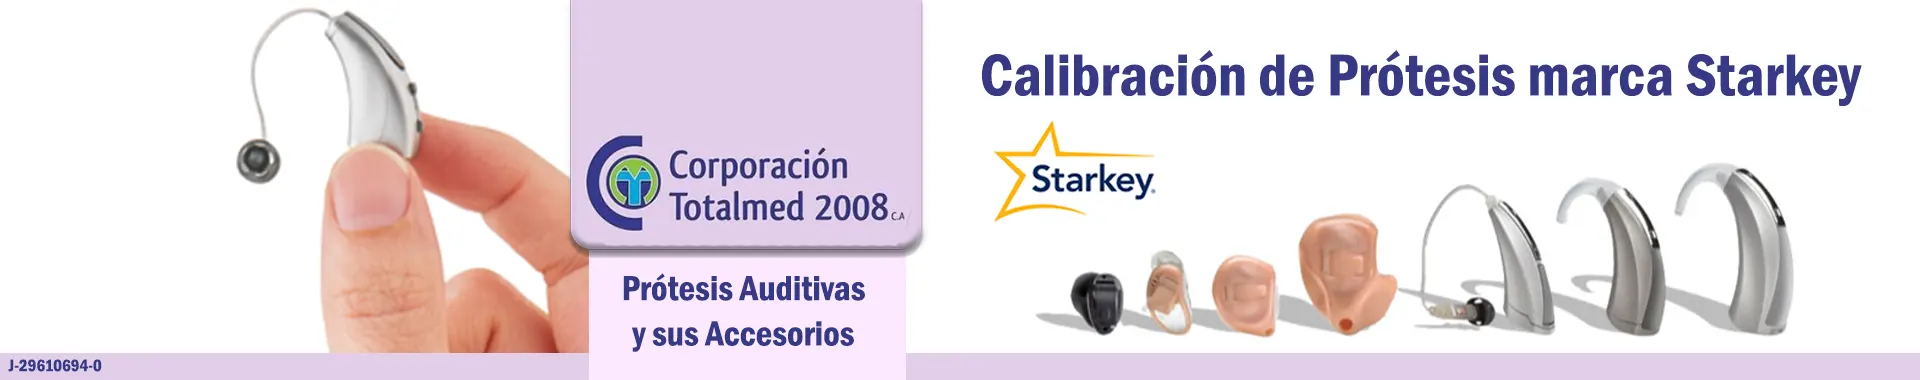 Imagen 2 del perfil de Corporación Totalmed 2008 CA